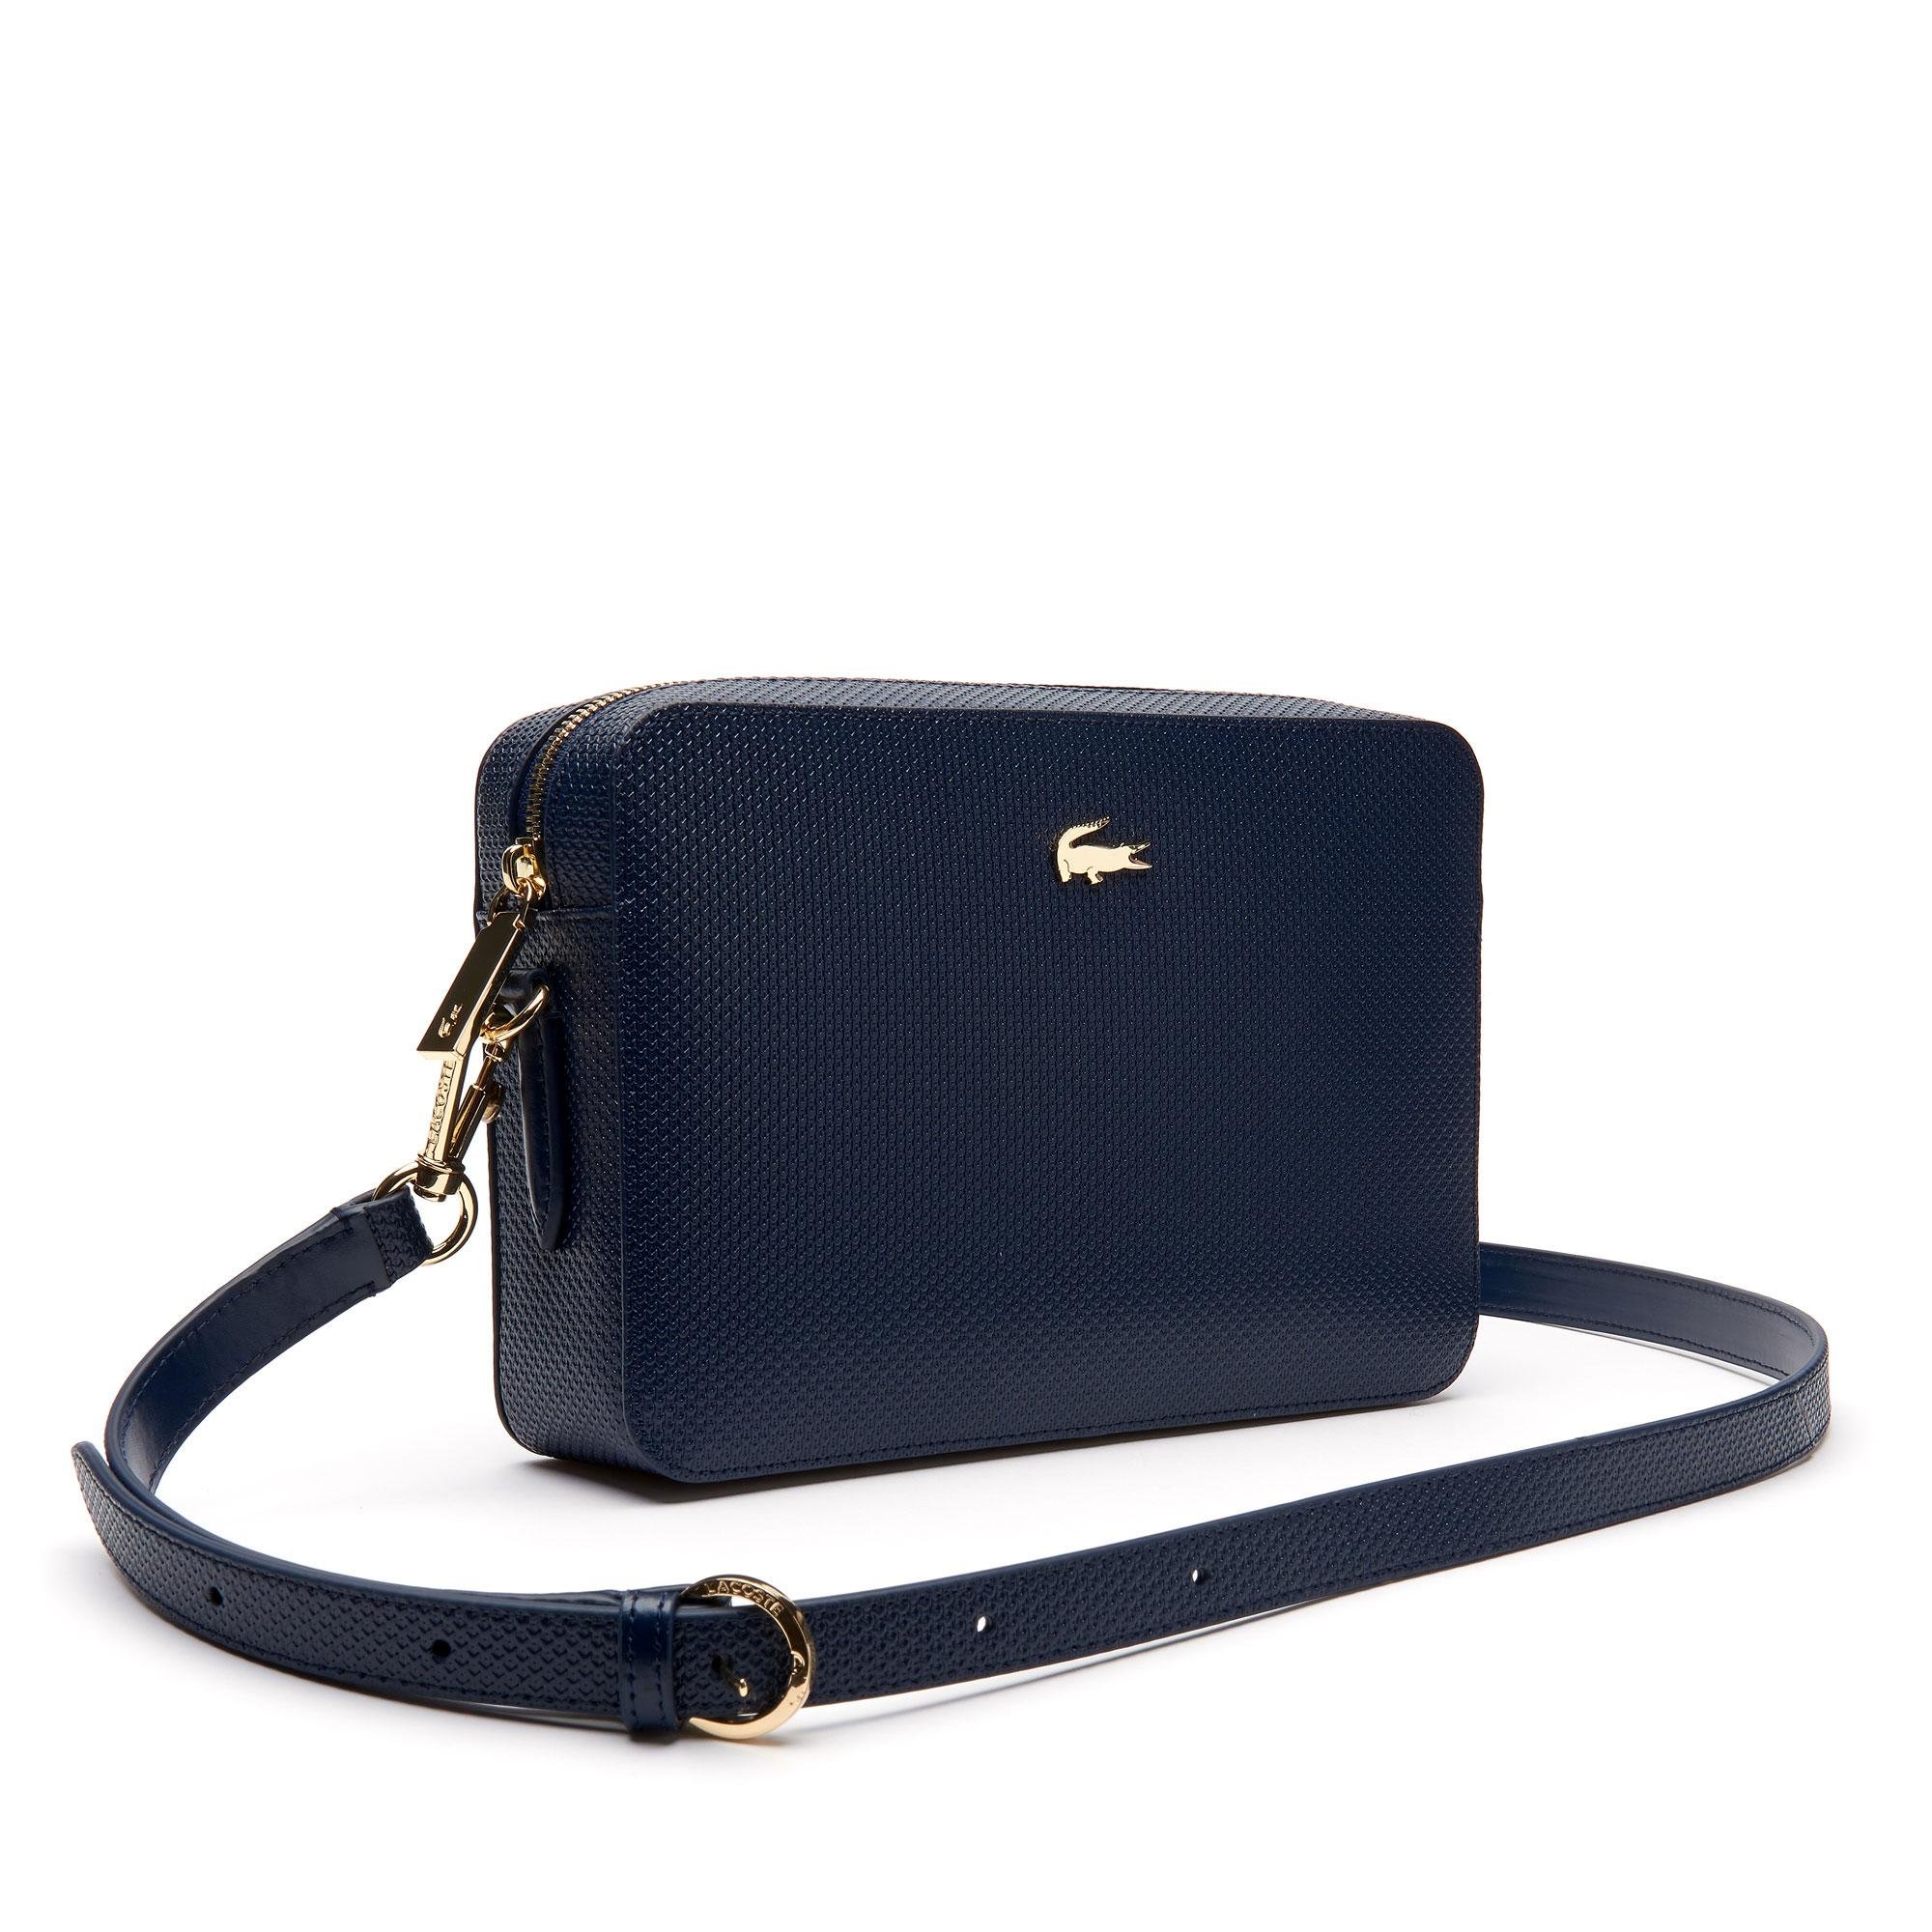 Lacoste Women's Chantaco Piqué Leather Square Shoulder Bag